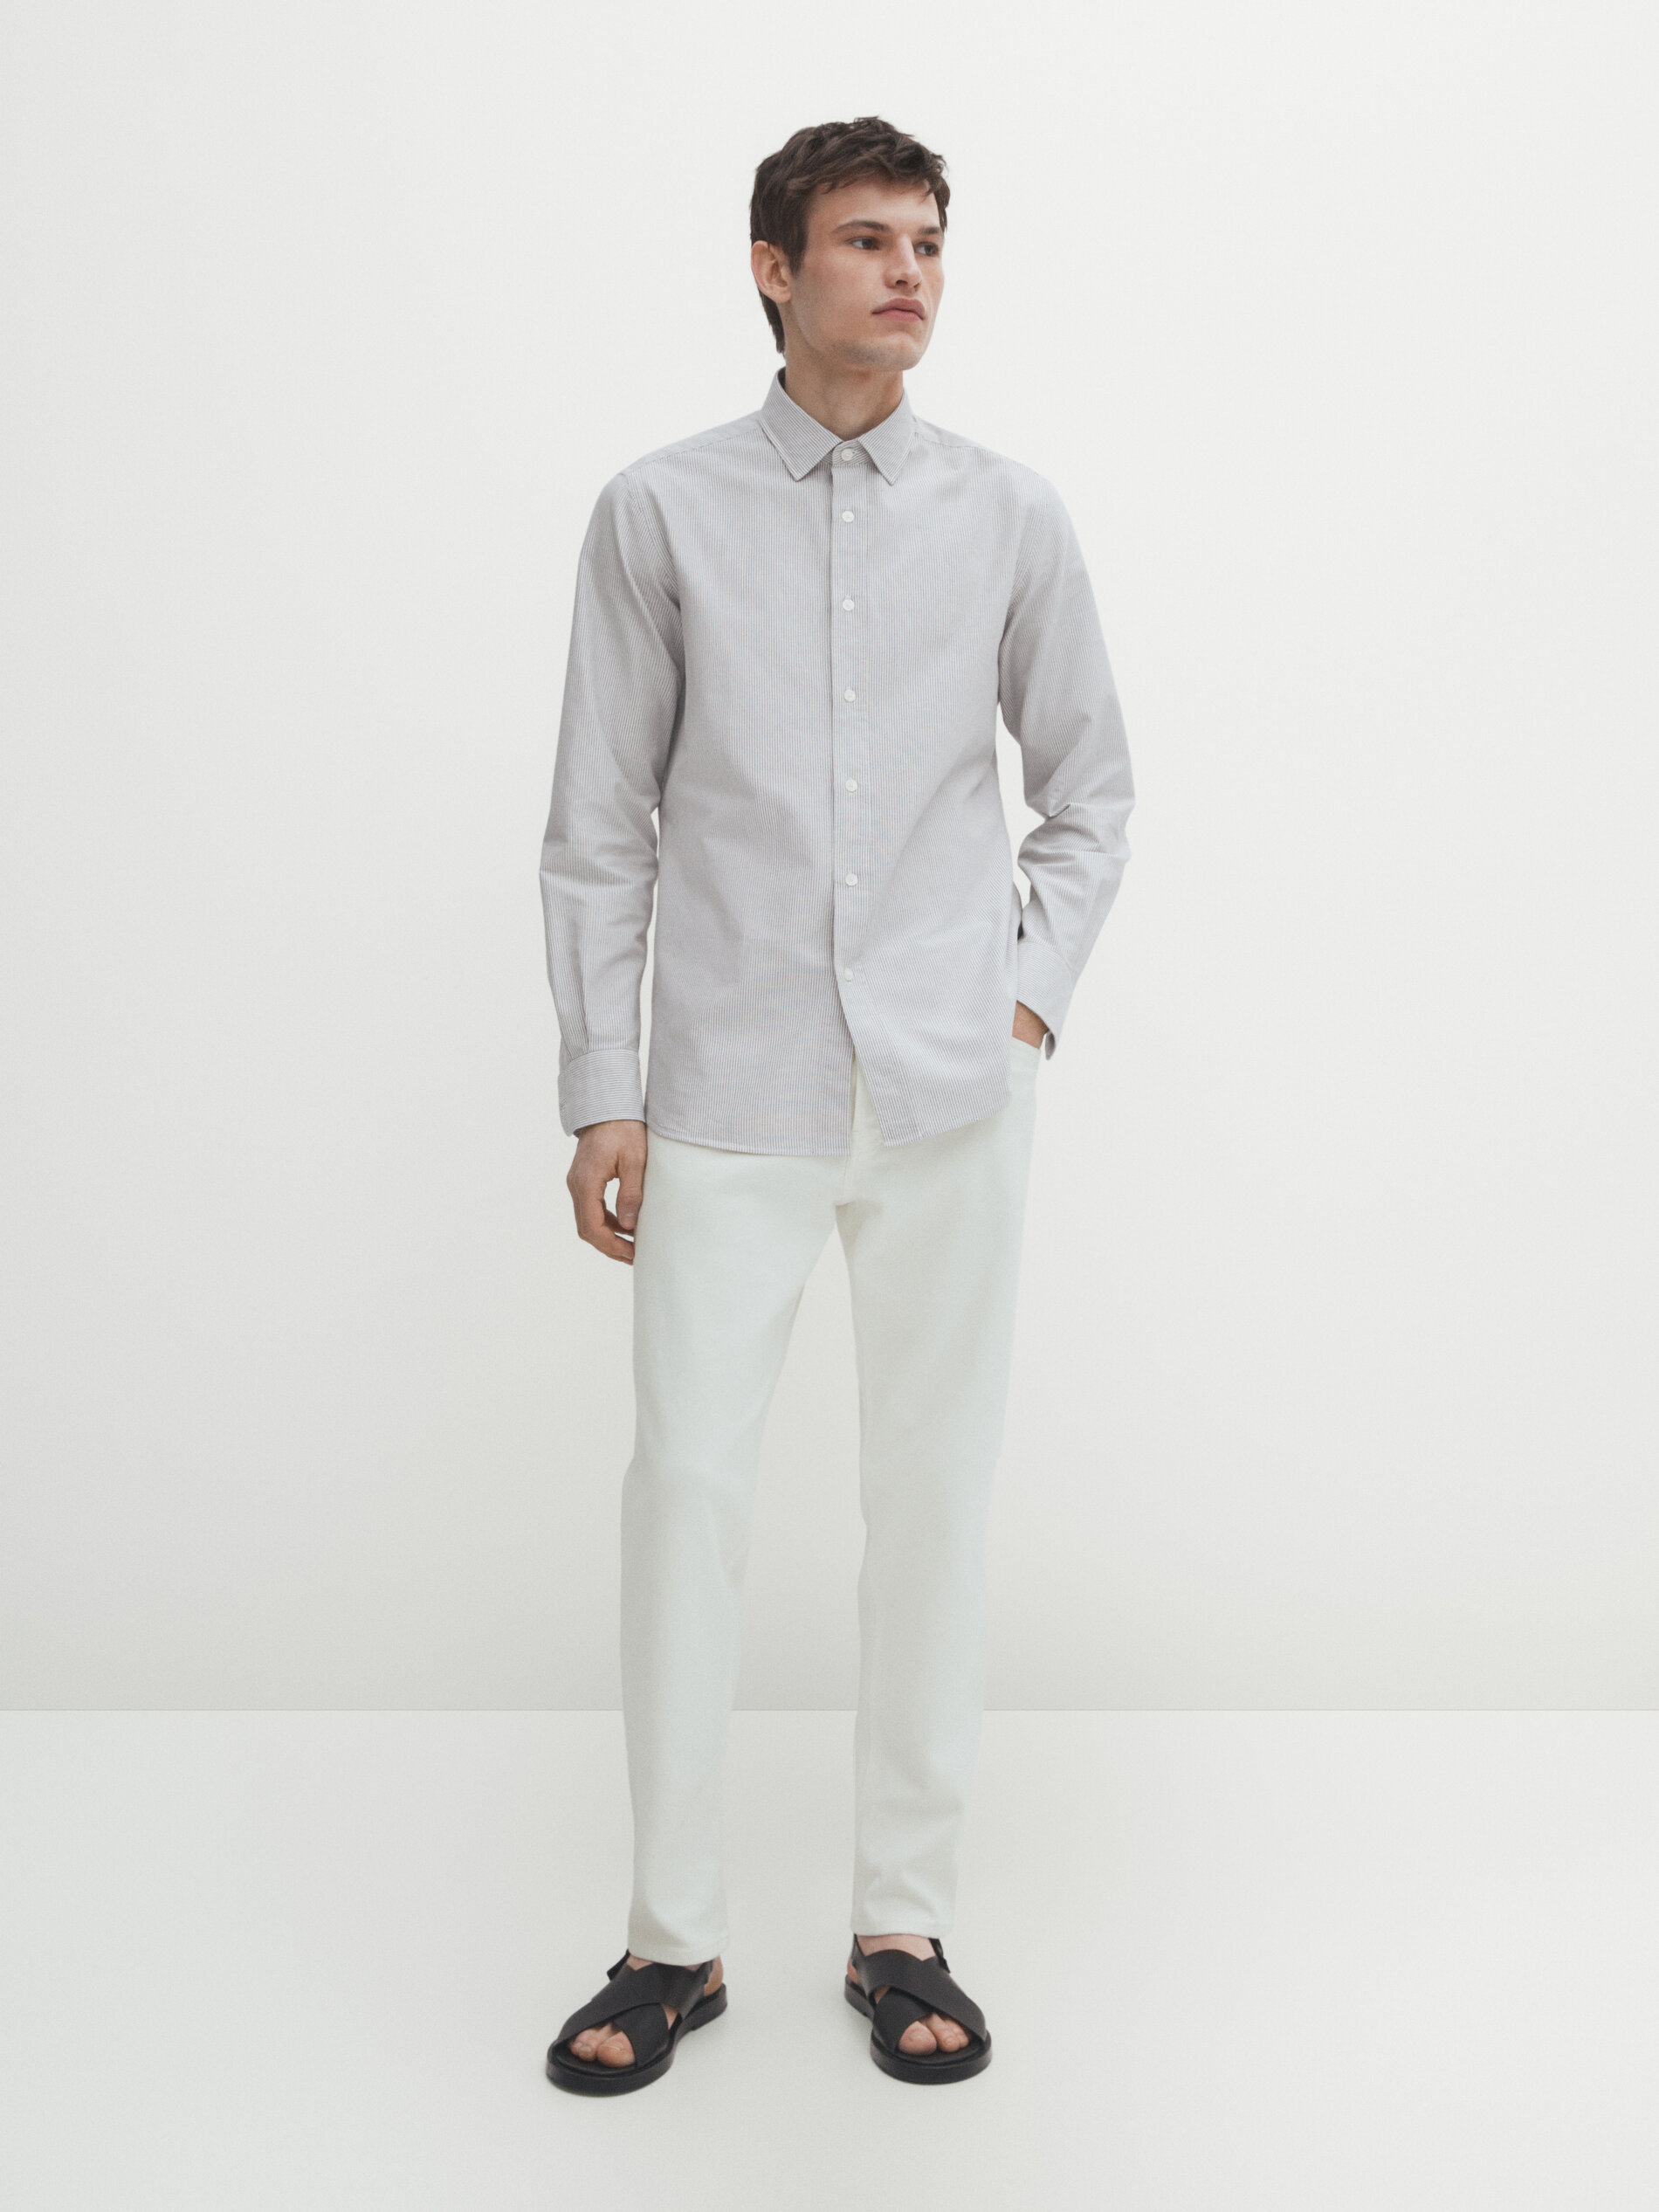 Massimo Dutti Oxfordhemd Im Slim-fit Mit Feinen Streifen In Pale Grey